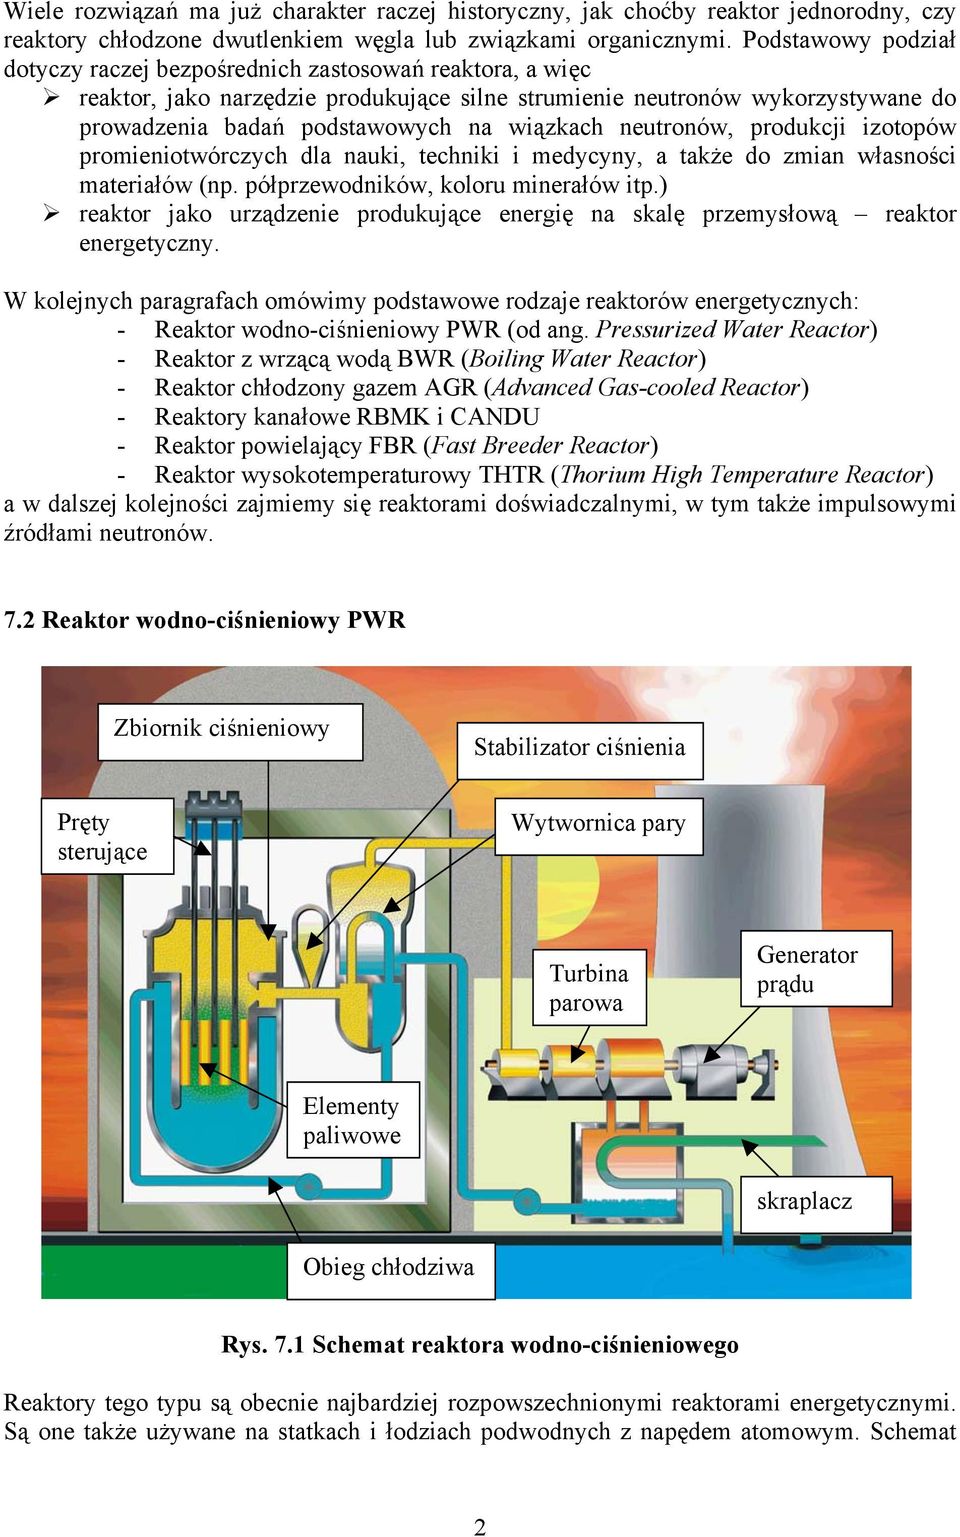 neutronów, produkcji izotopów promieniotwórczych dla nauki, techniki i medycyny, a także do zmian własności materiałów (np. półprzewodników, koloru minerałów itp.